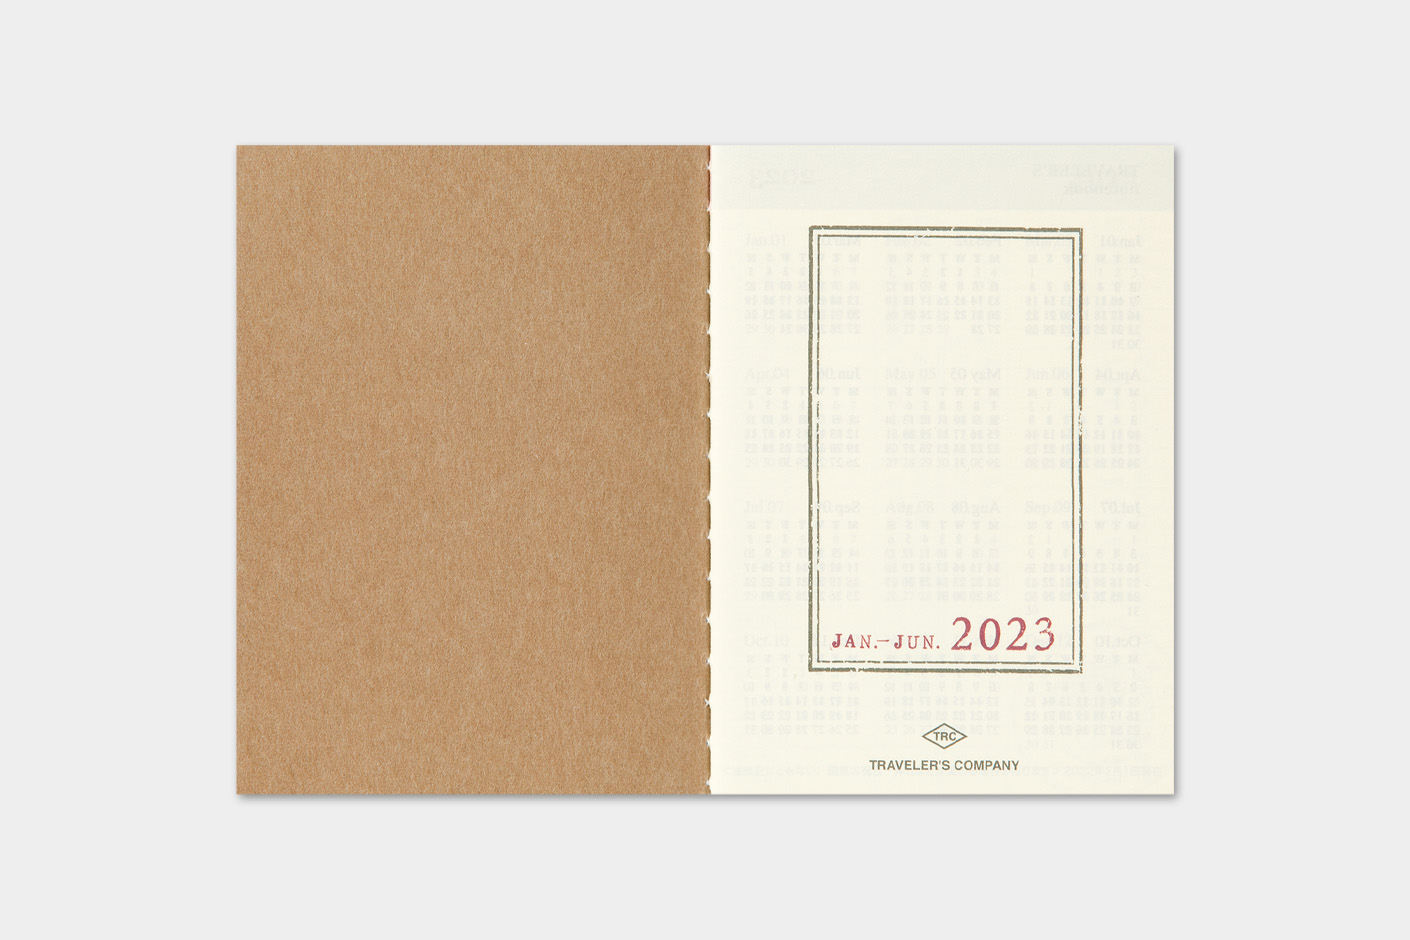 2023 Kalender (Wochenansicht) - TRAVELER'S Notebook Refill Passport